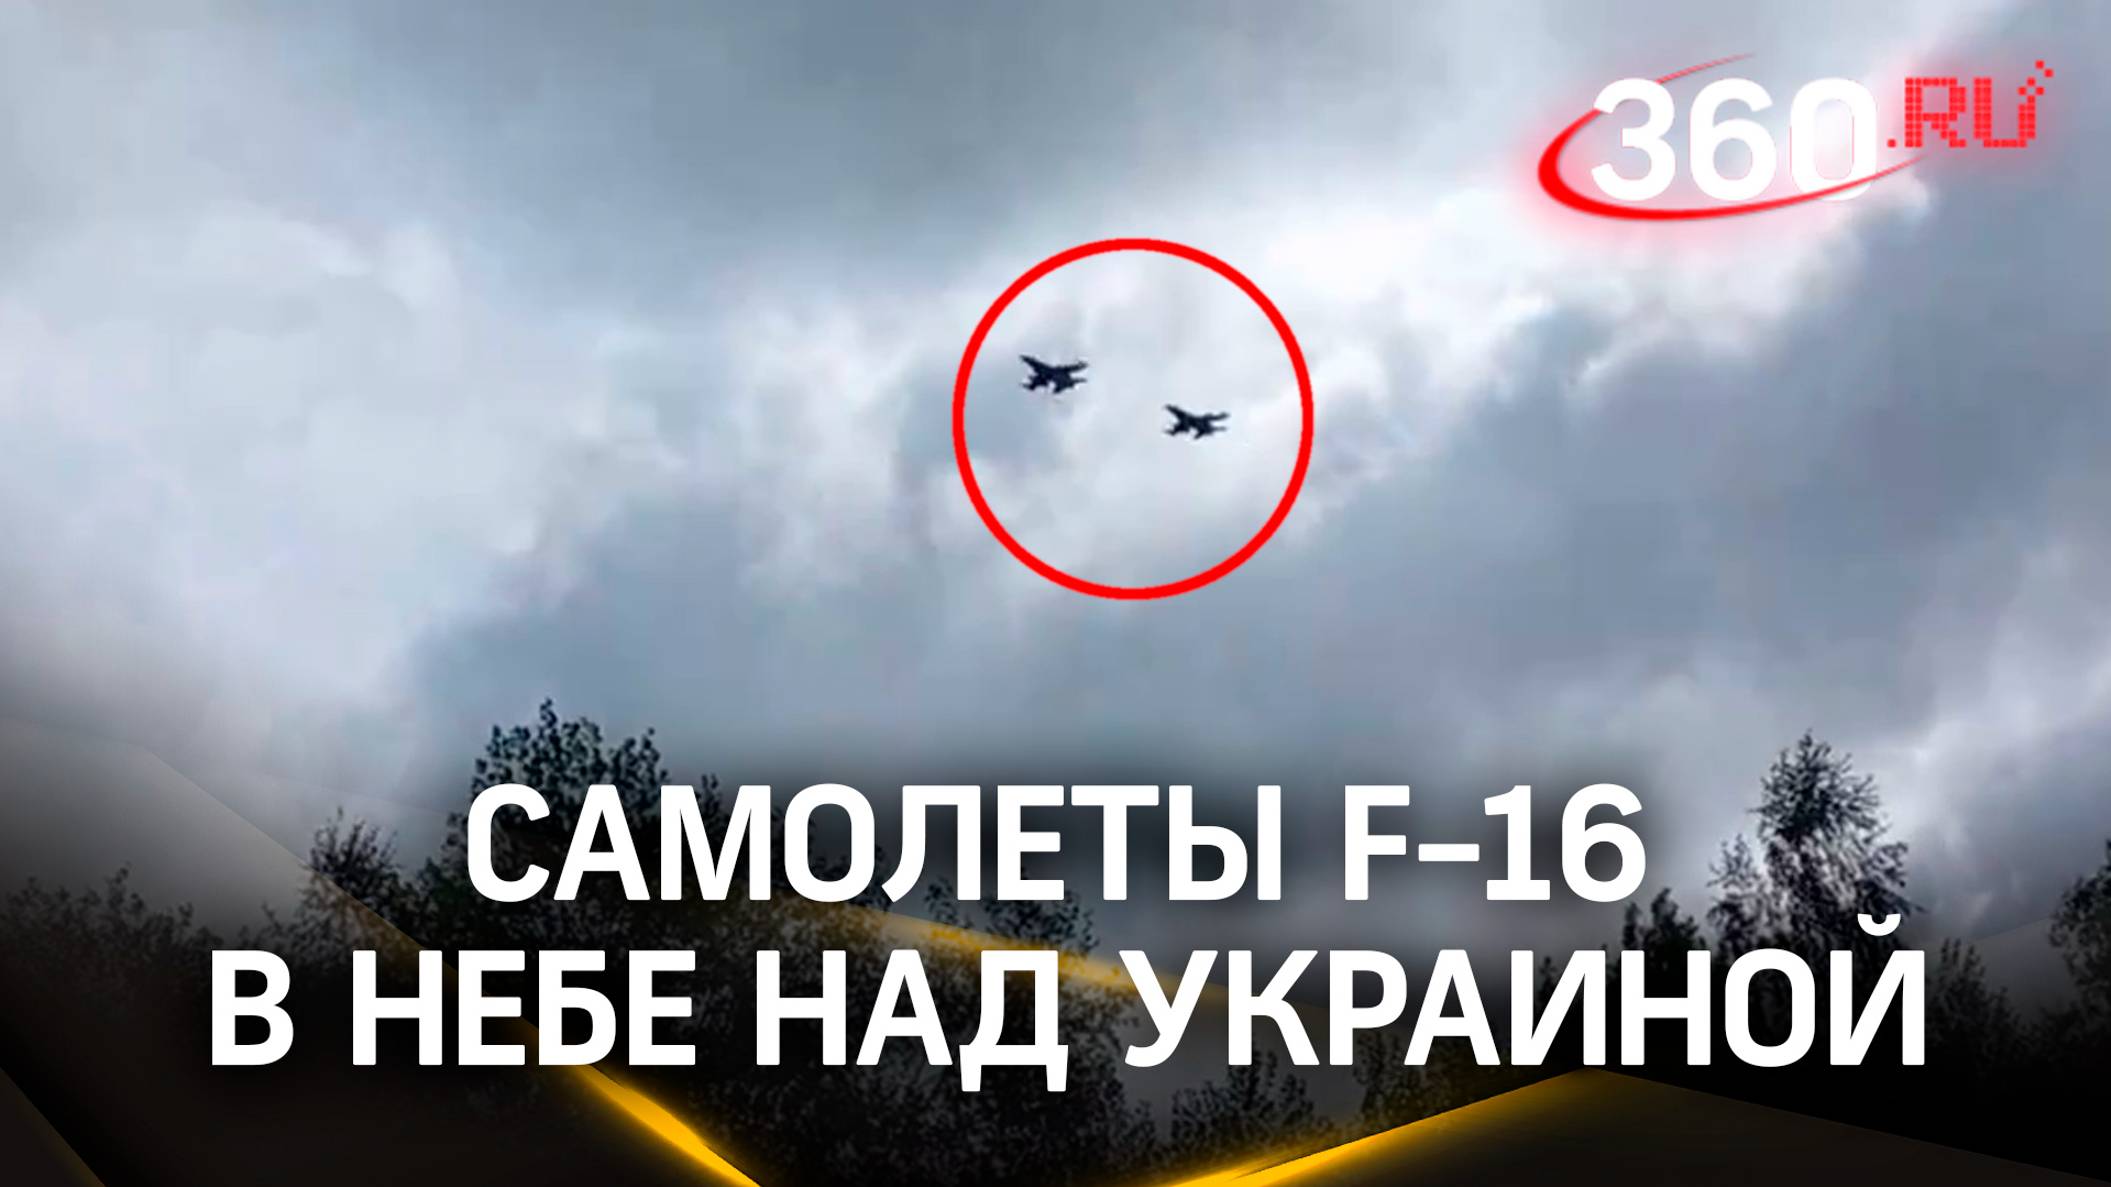 В соцсетях появилось видео самолетов F-16, предположительно, летящих в небе над Украиной